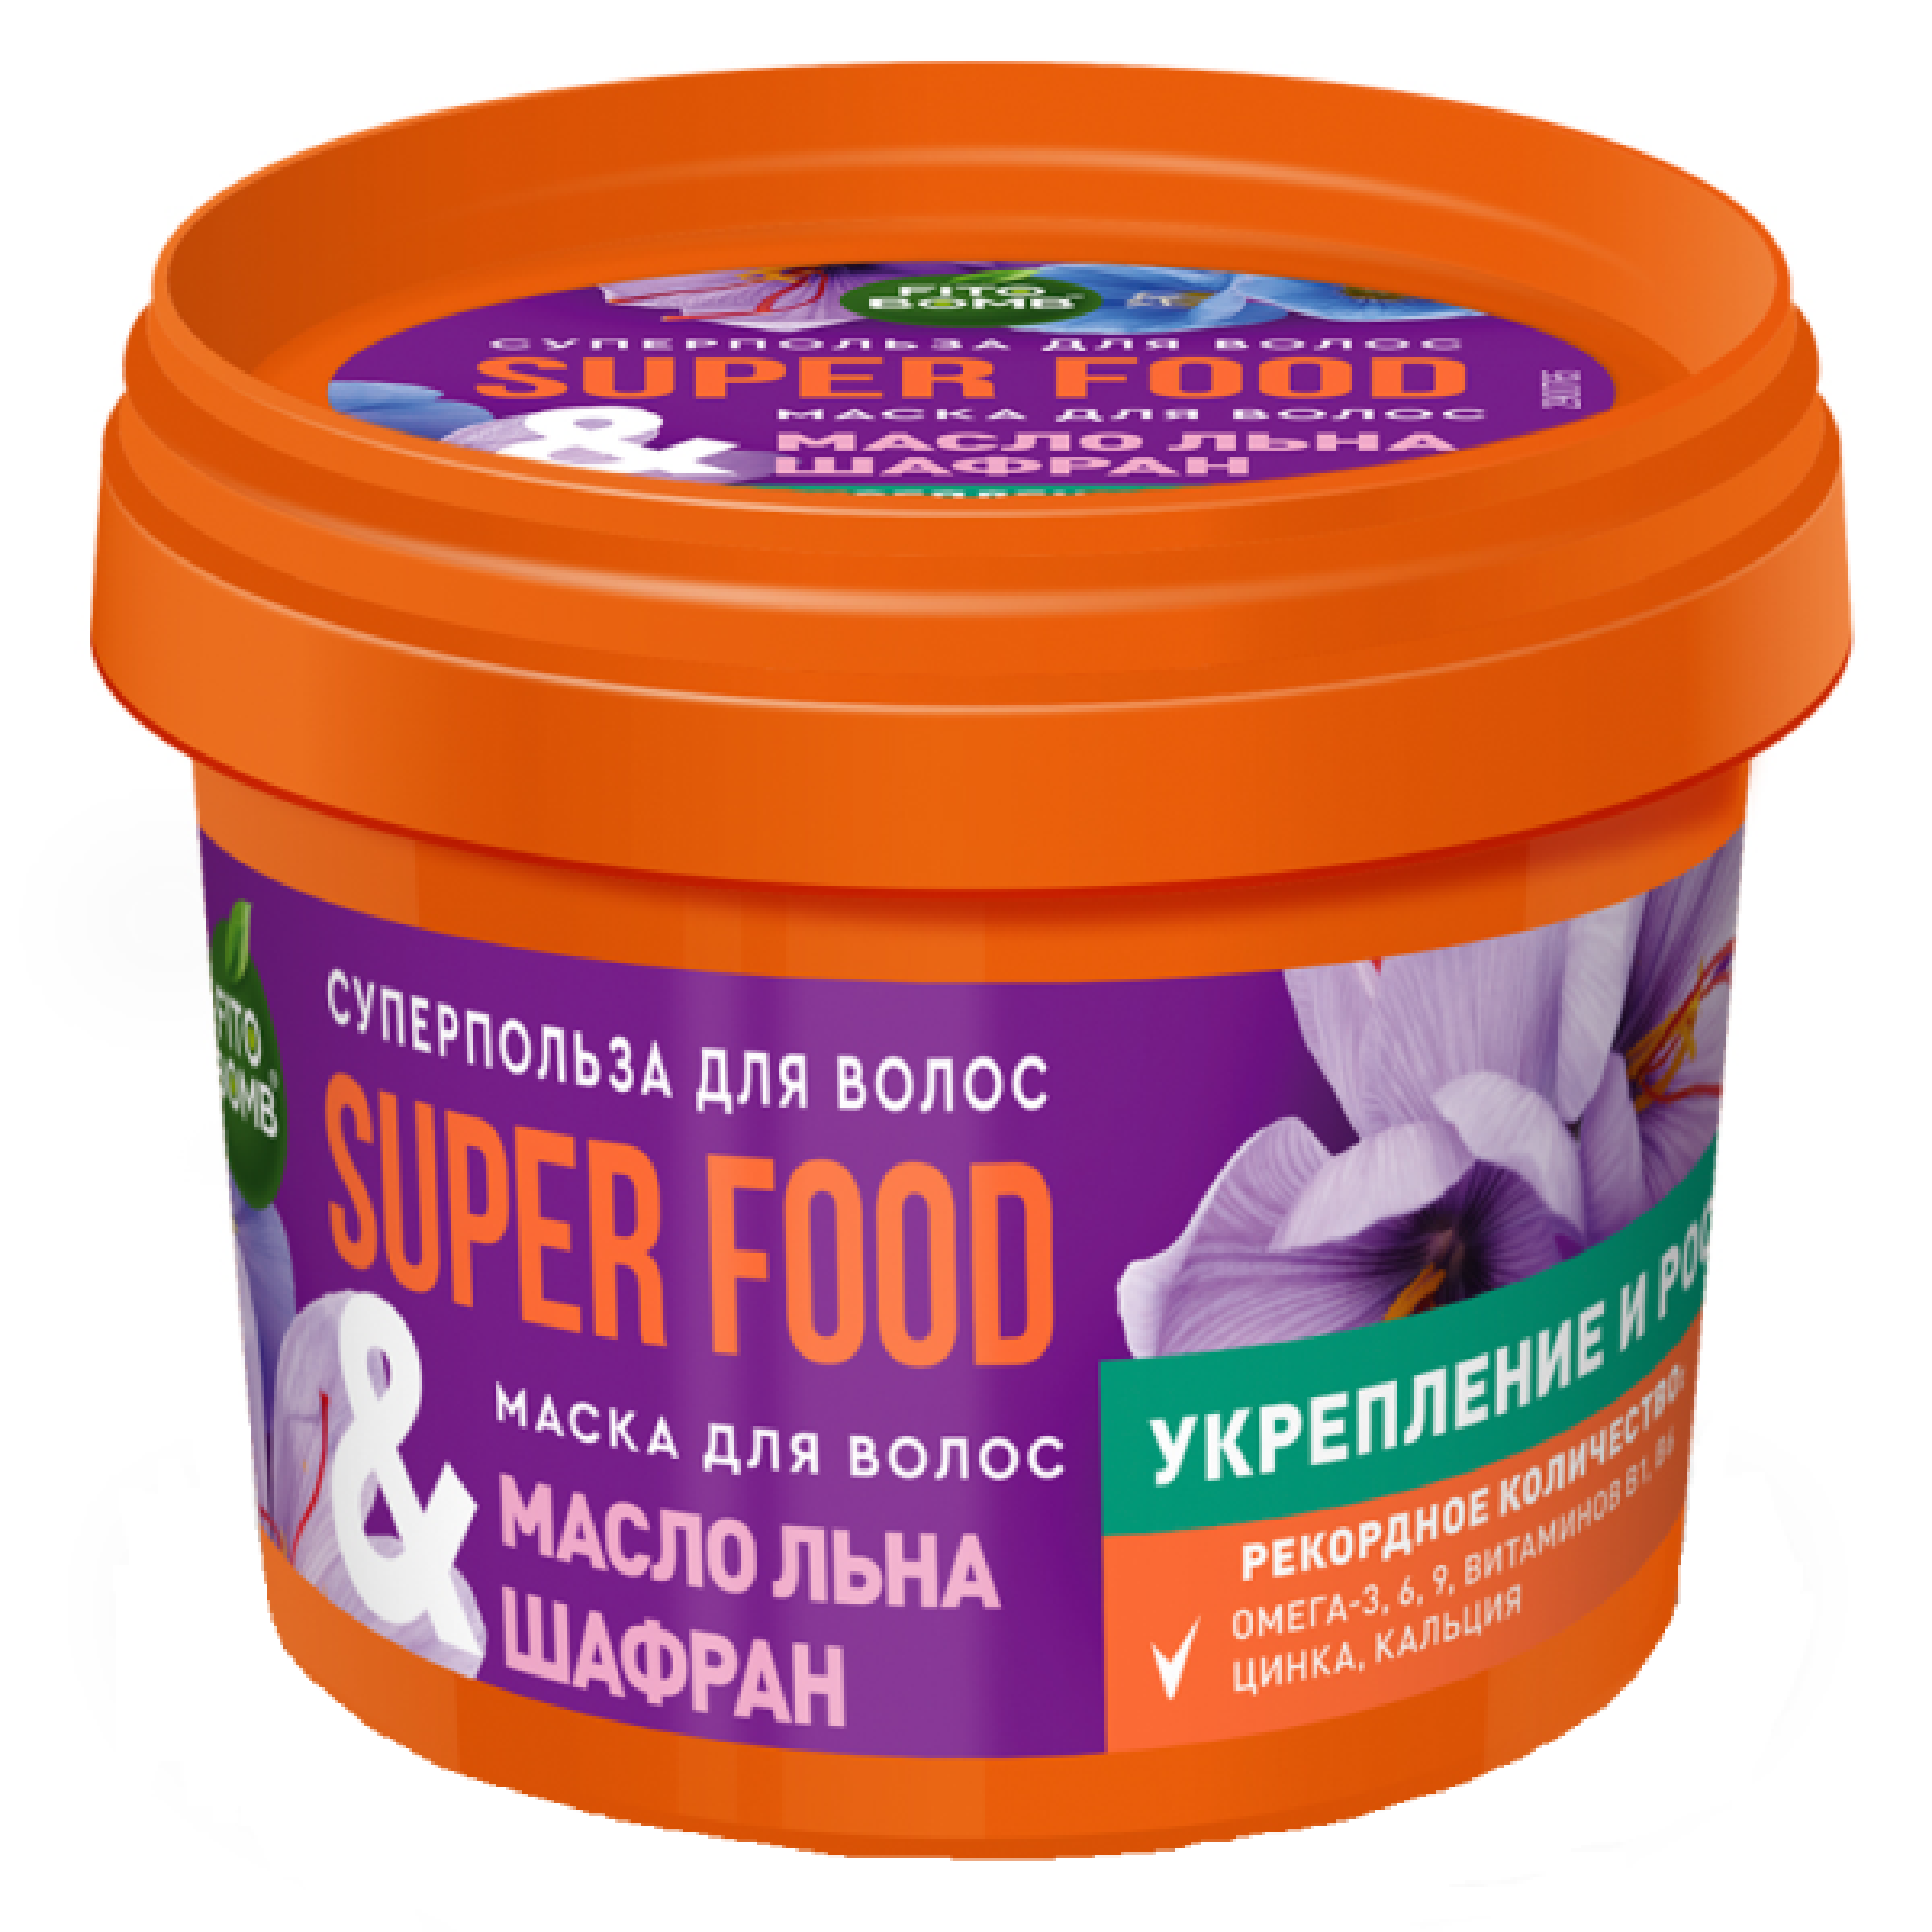 Маска для волос Super food Масло льна и шафран Фитокосметик, 100 мл